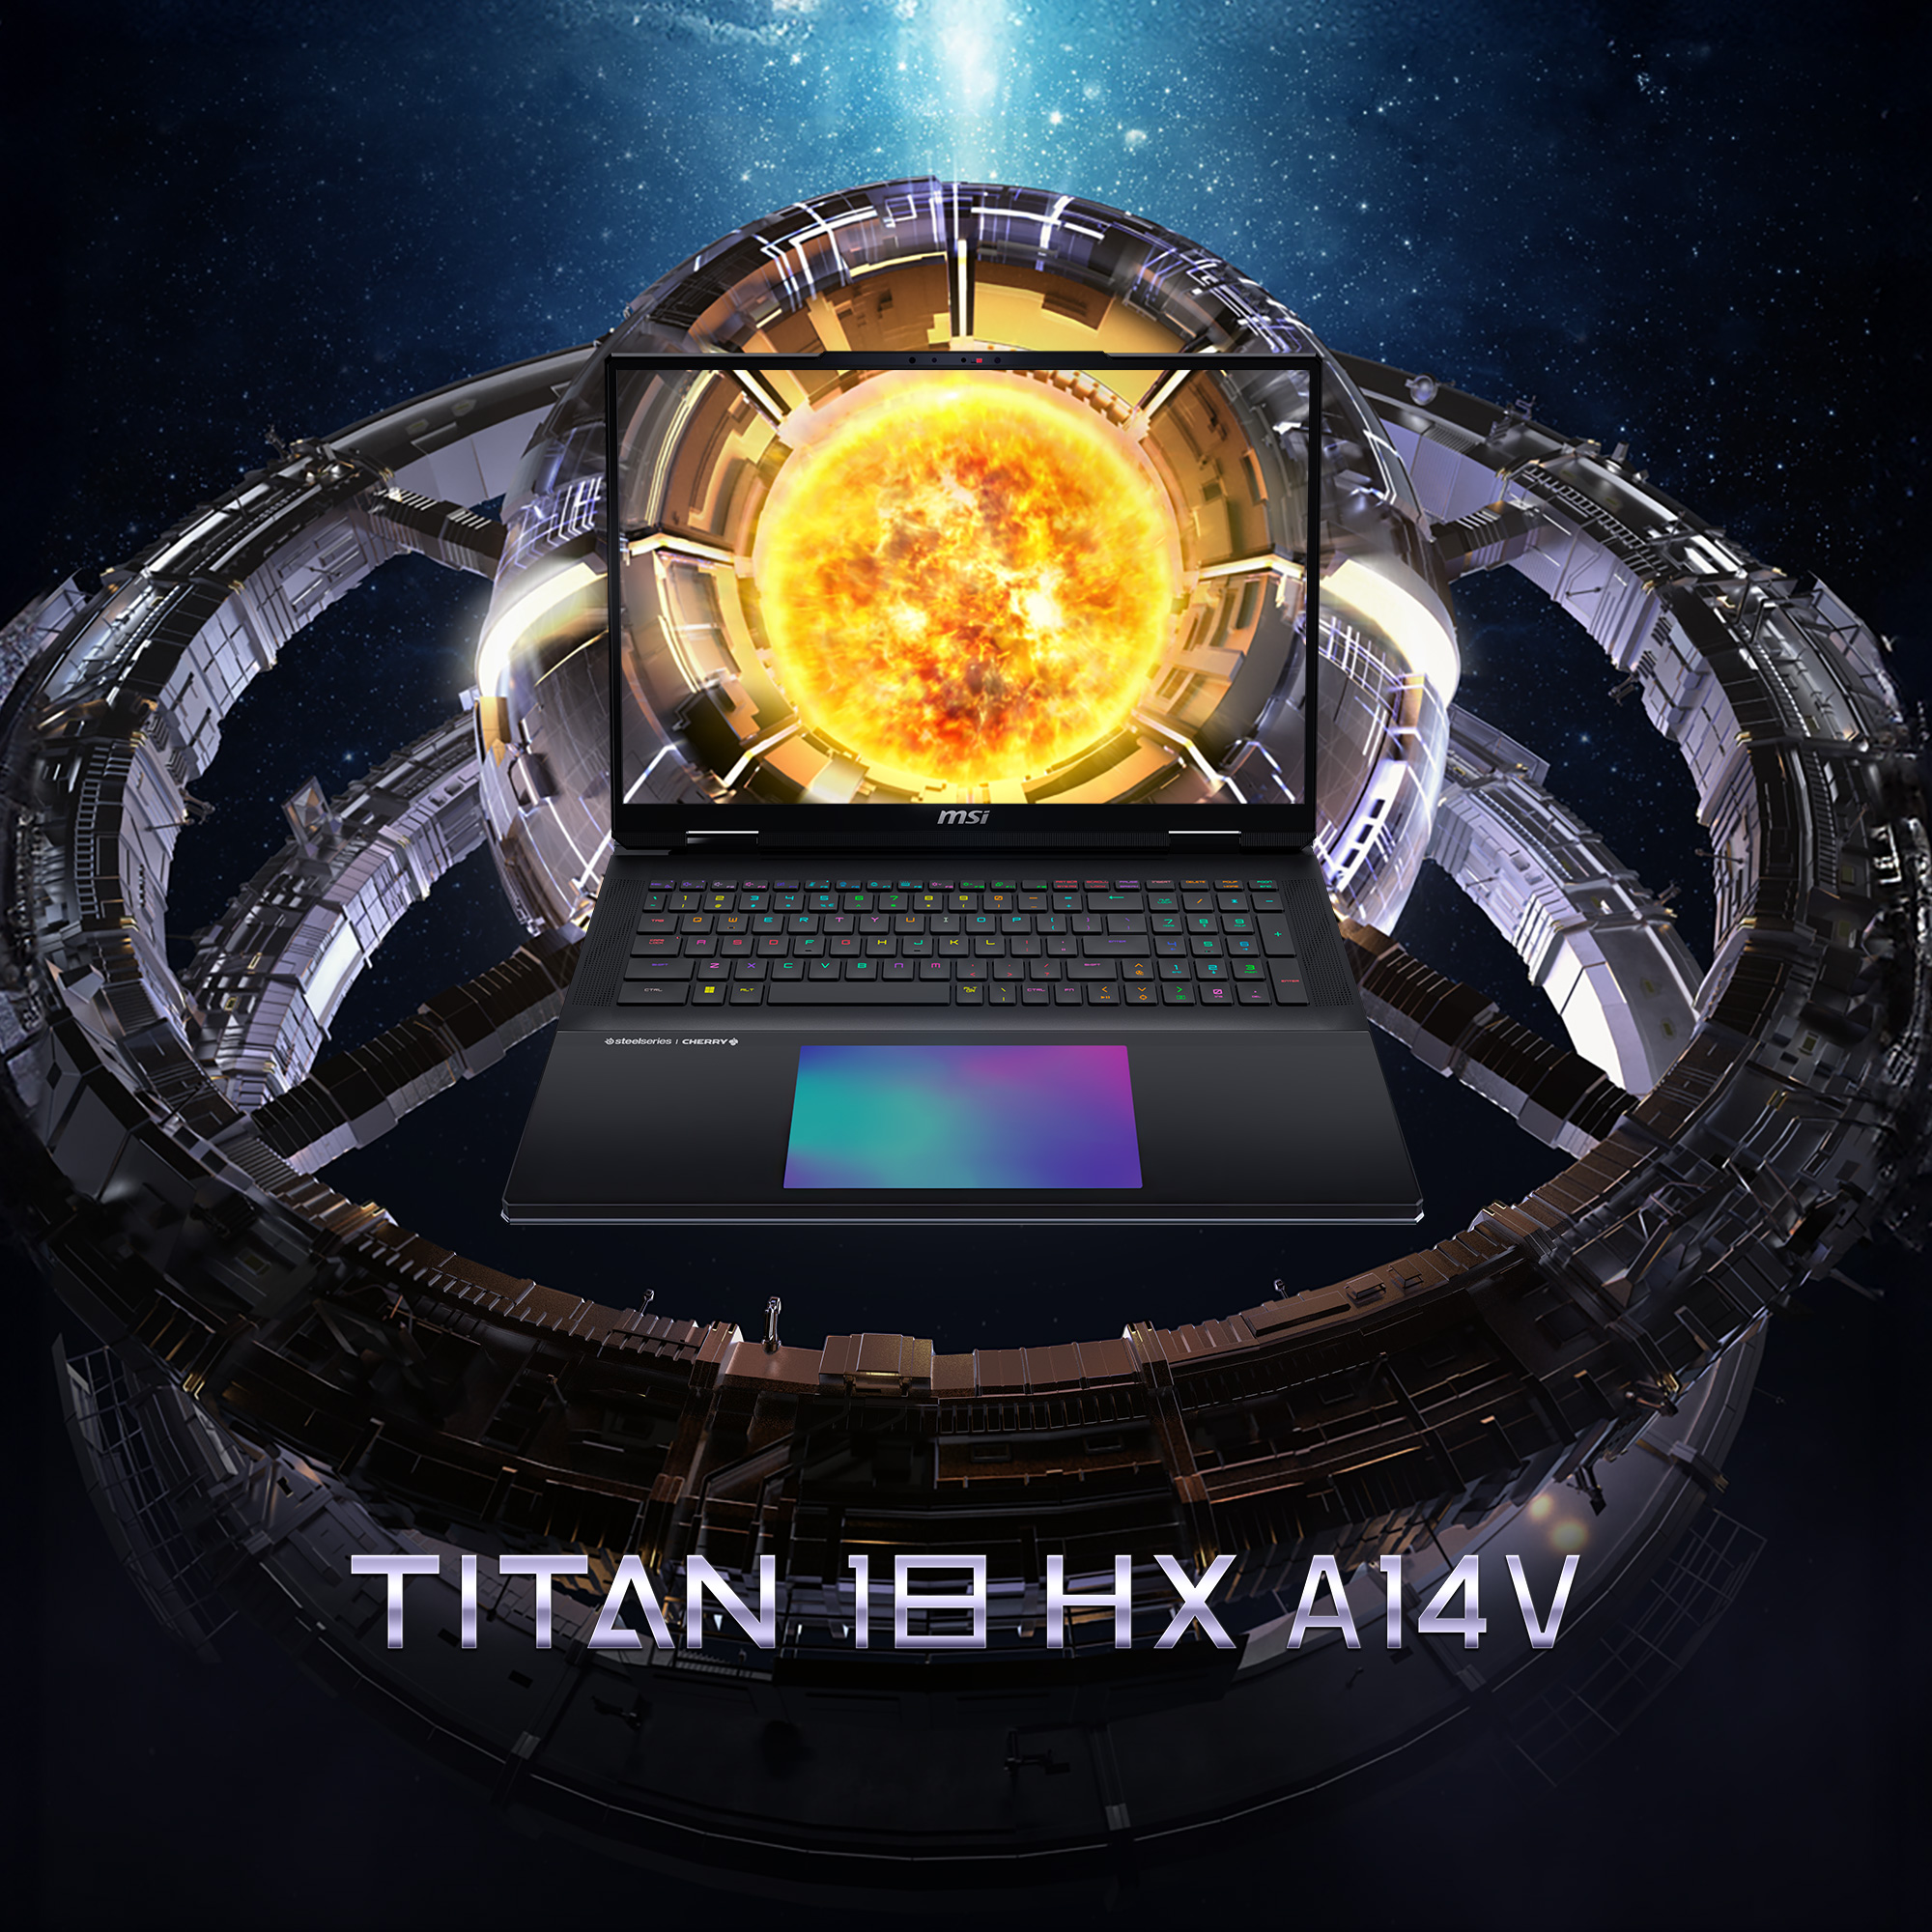 MSI Titan 18 HX A14VHG-070 - ABSOLUTE LEISTUNG